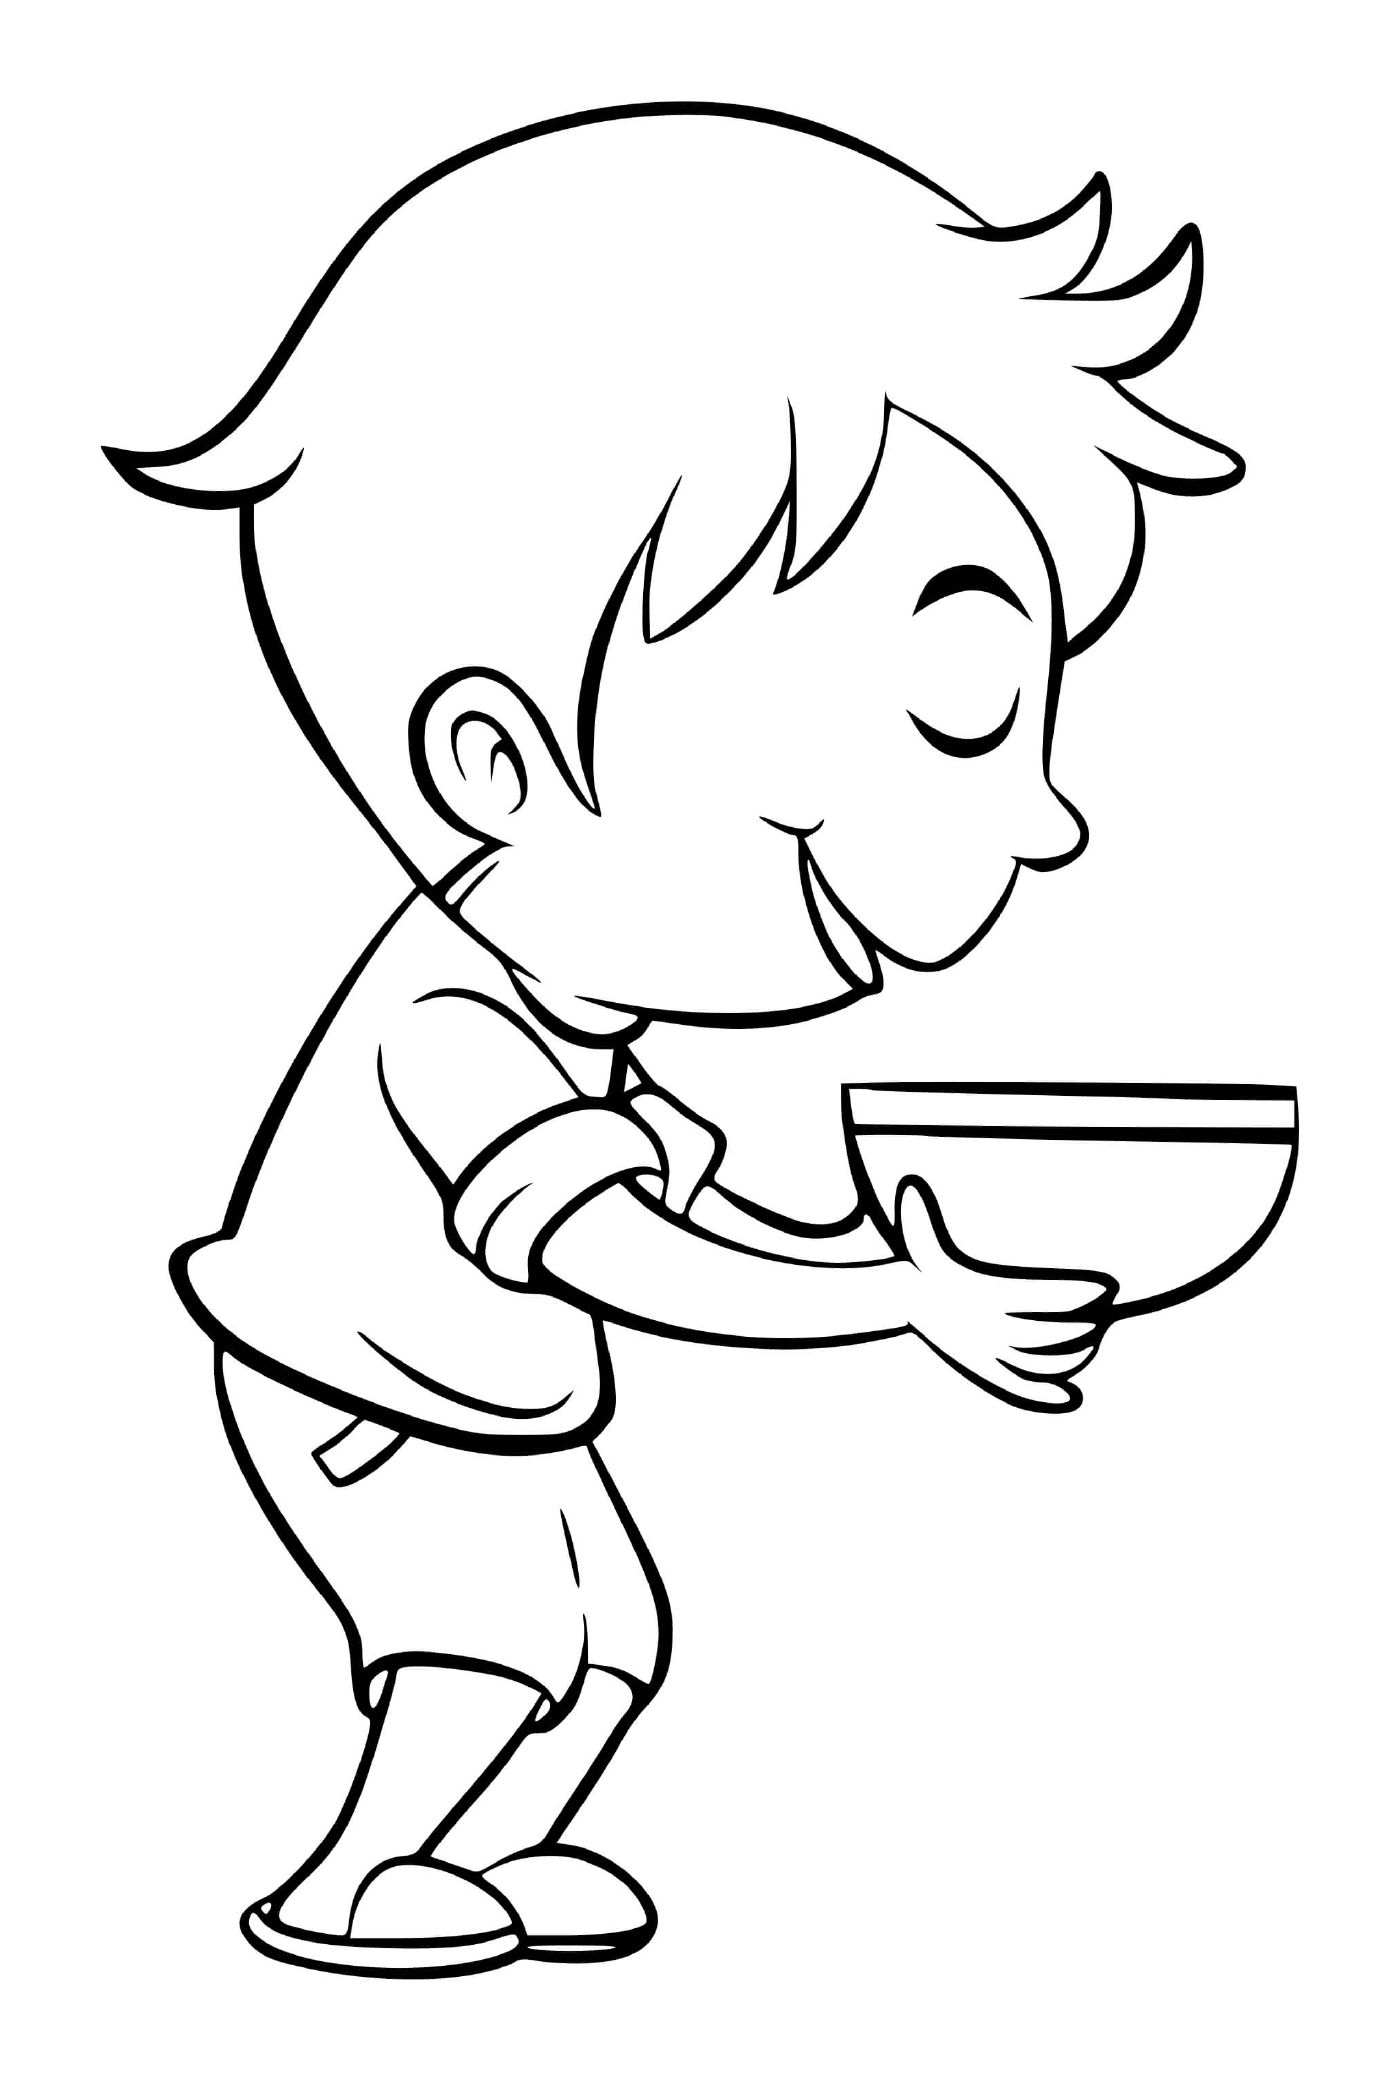  男孩喜欢吃西椰菜汤 